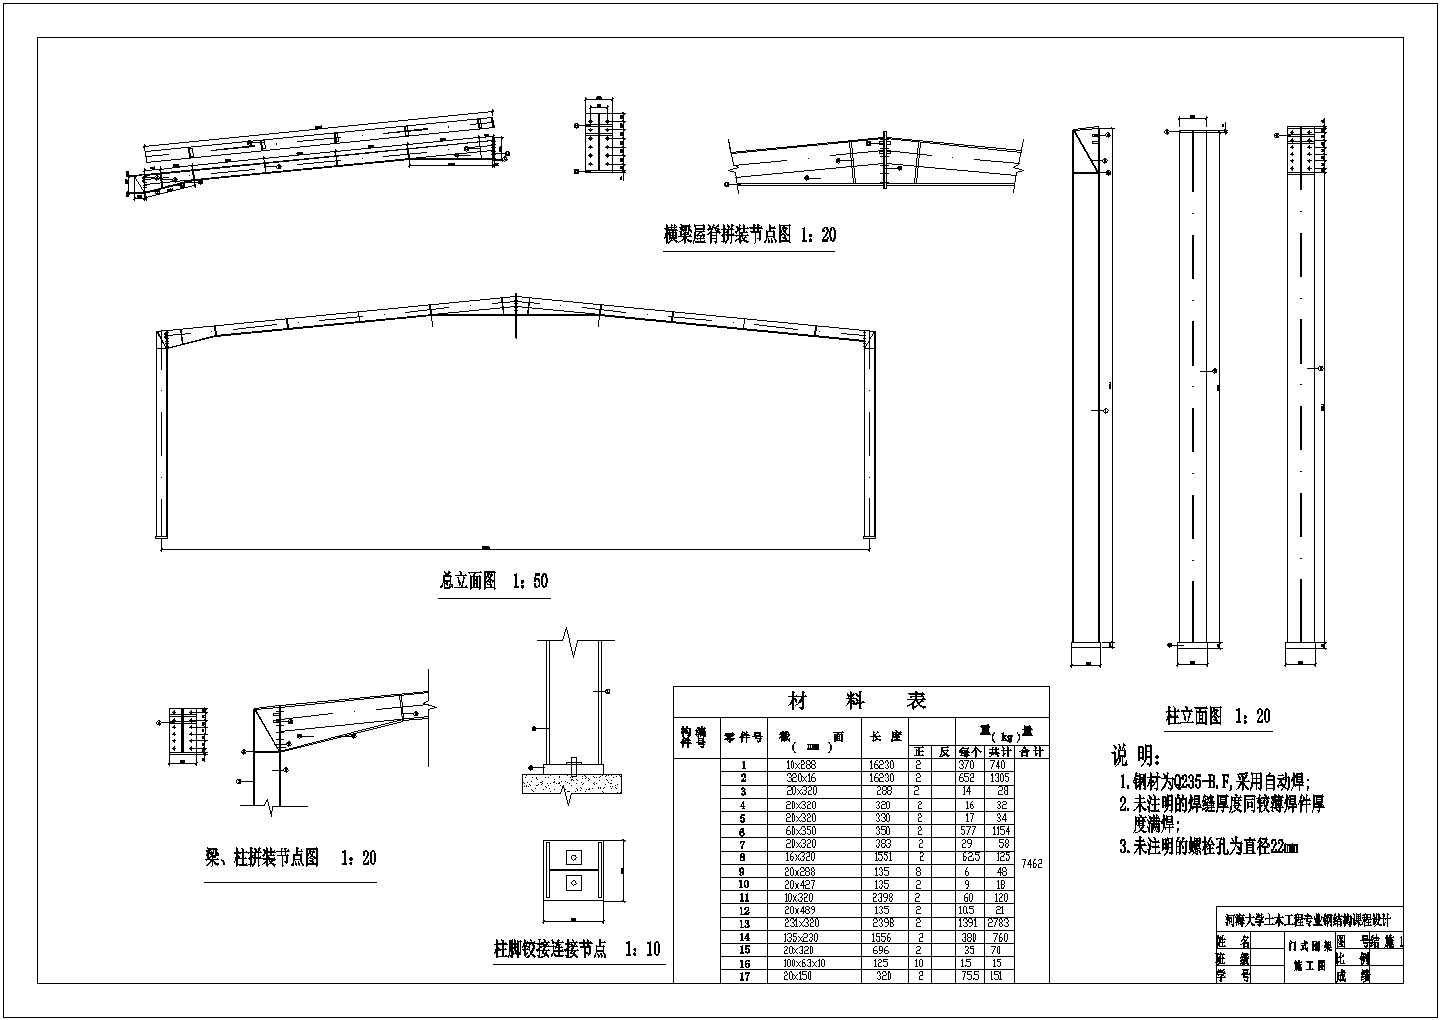 河海大学土木工程专业钢结构课程设计图